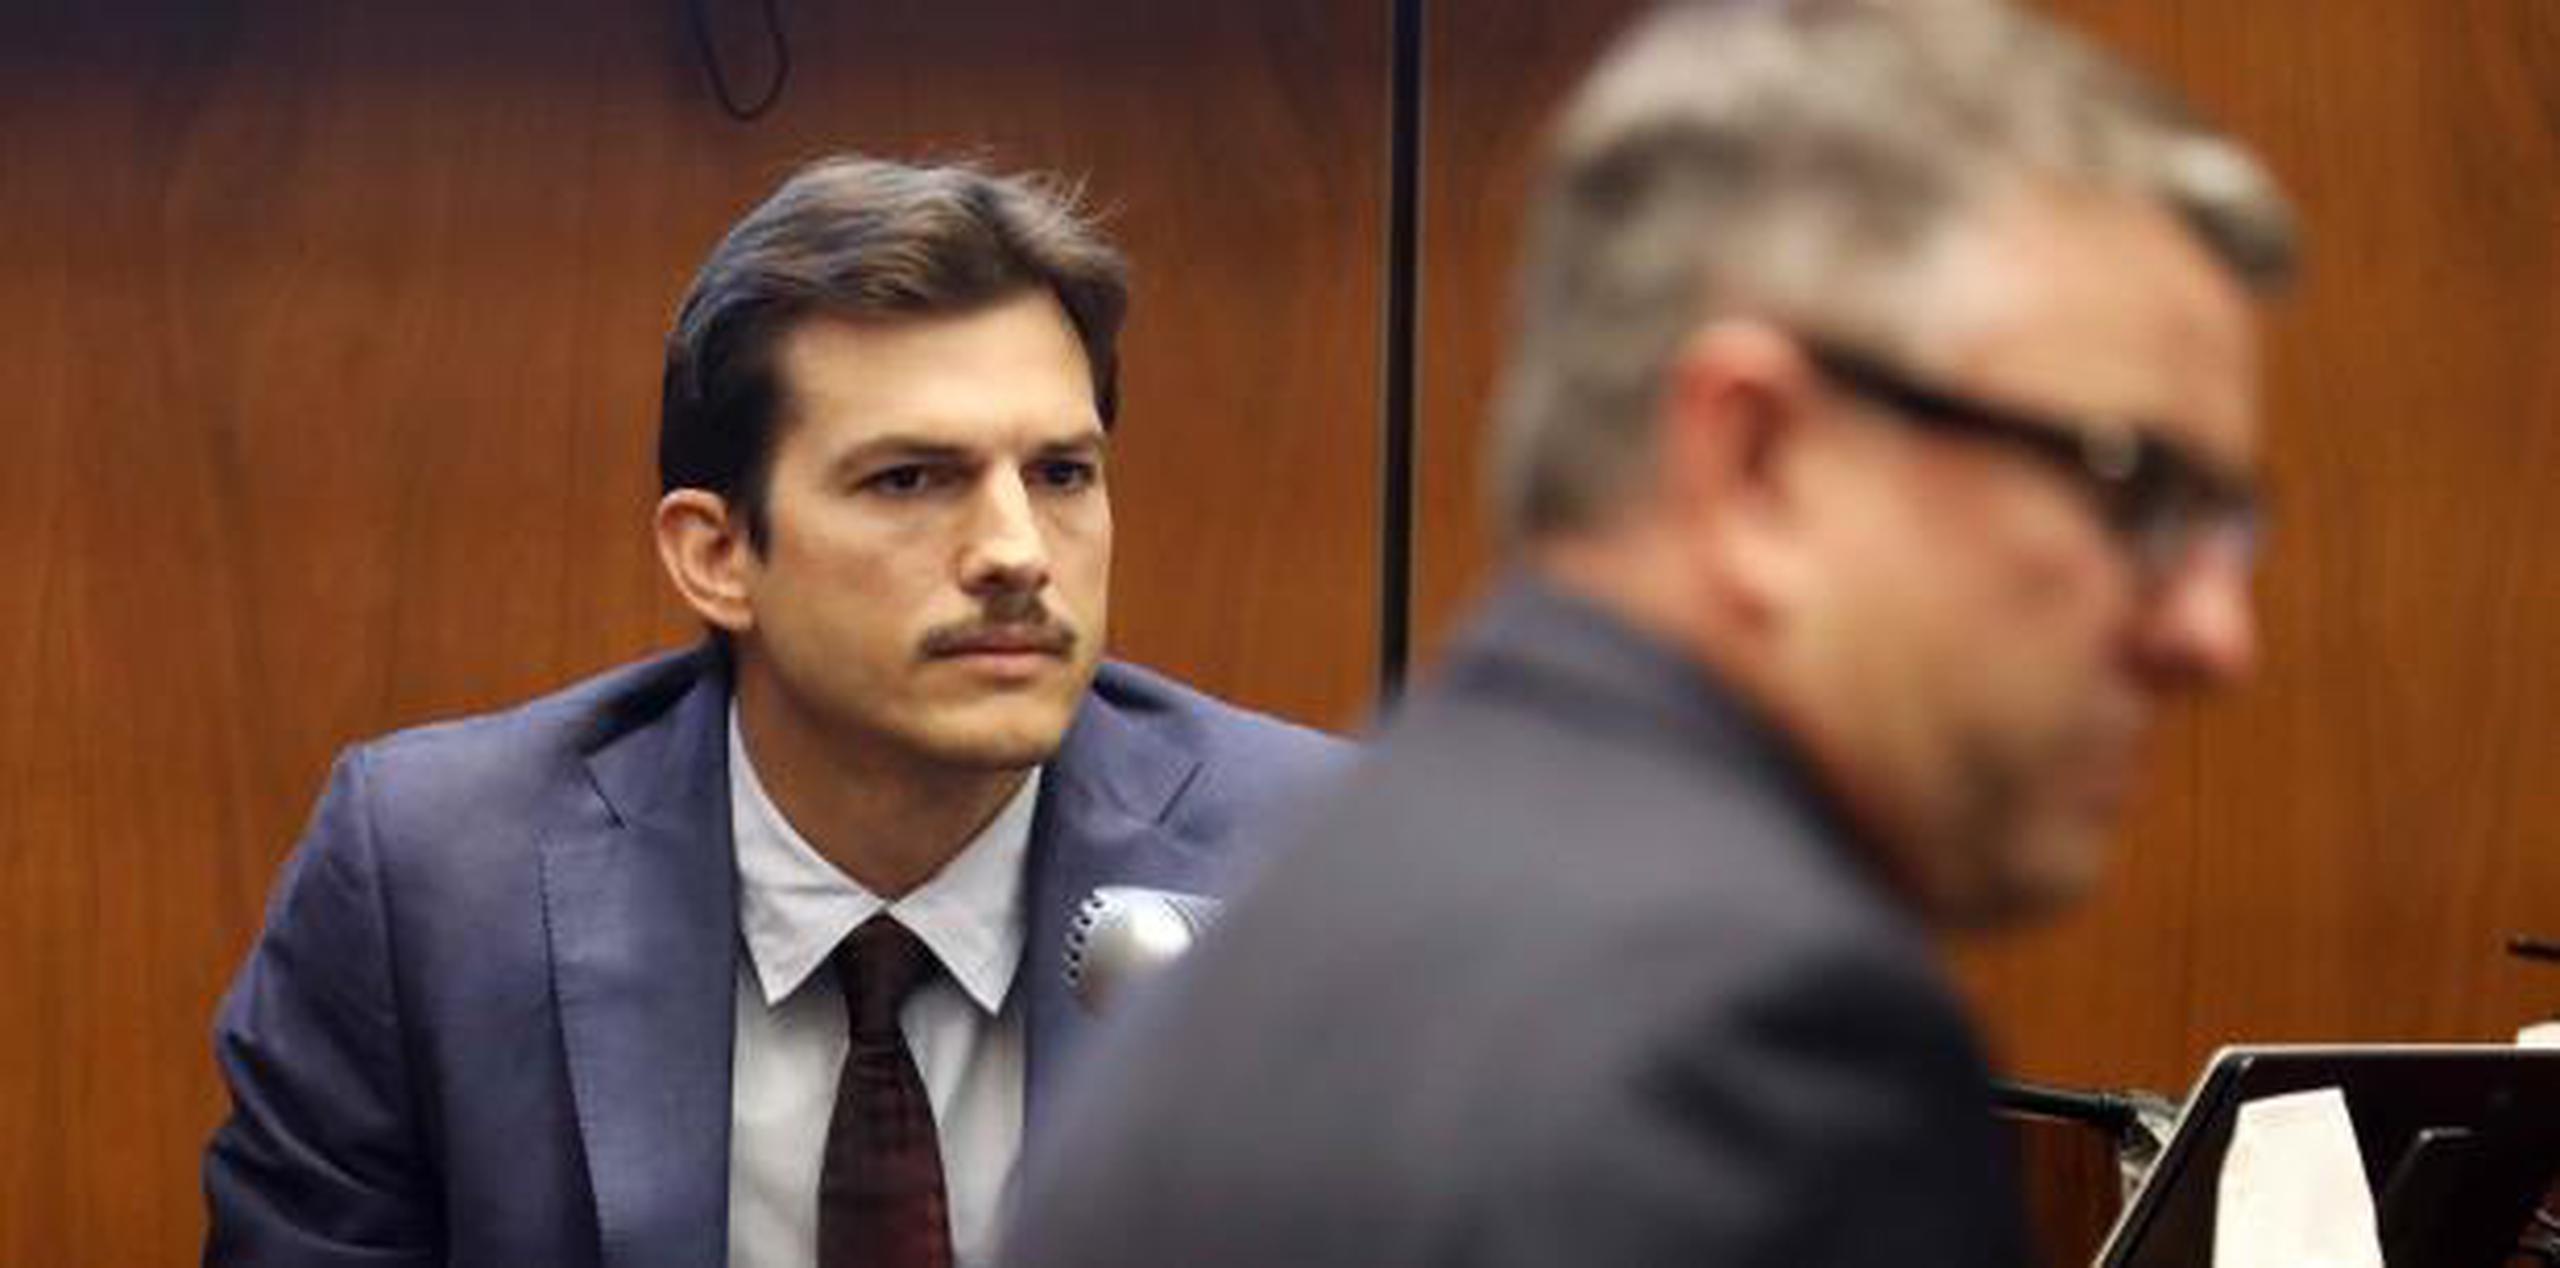 El actor Ashton Kutcher testifica durante un juicio contra el presunto asesino estadounidense Michael Thomas Gargiulo, en un juzgado del condado de Los Ángeles, California (EFE)